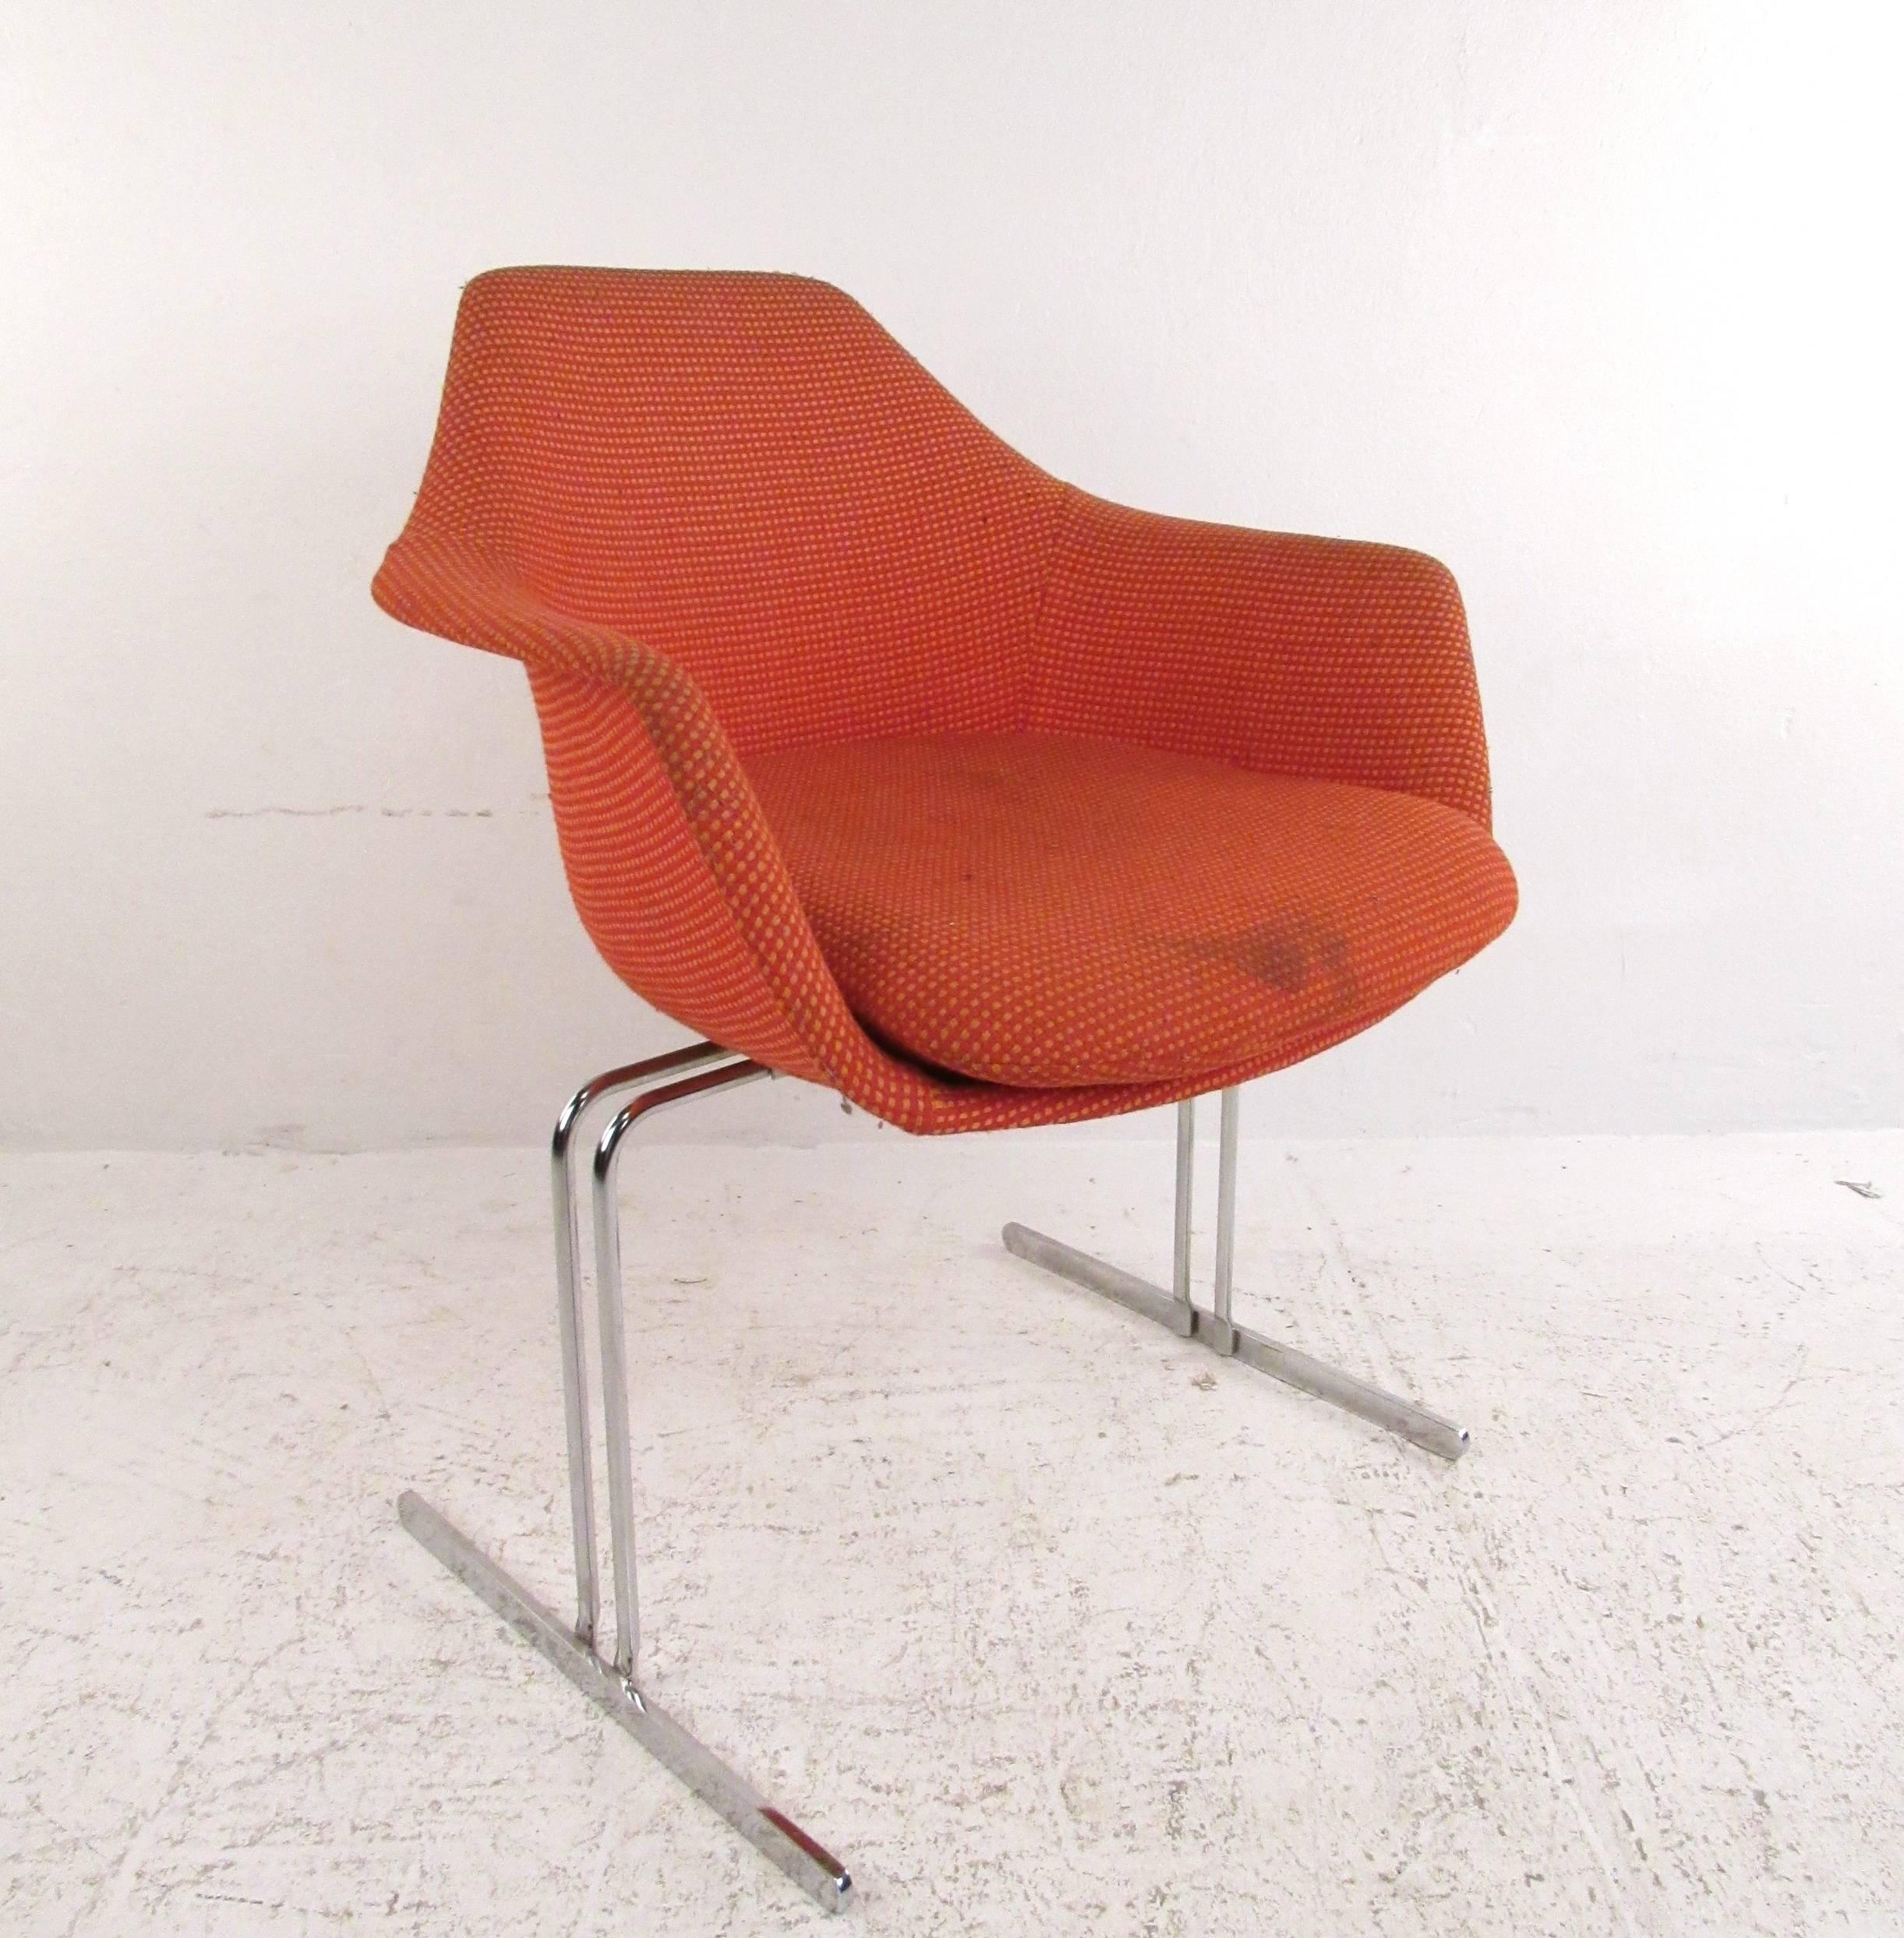 Cet ensemble de chaises de conférence de style Eero Saarinen, datant du milieu du siècle dernier, présente un style vintage unique similaire à la chaise Womb vendue par Knoll. Le design unique de la coque moulée, le cadre rembourré et la base